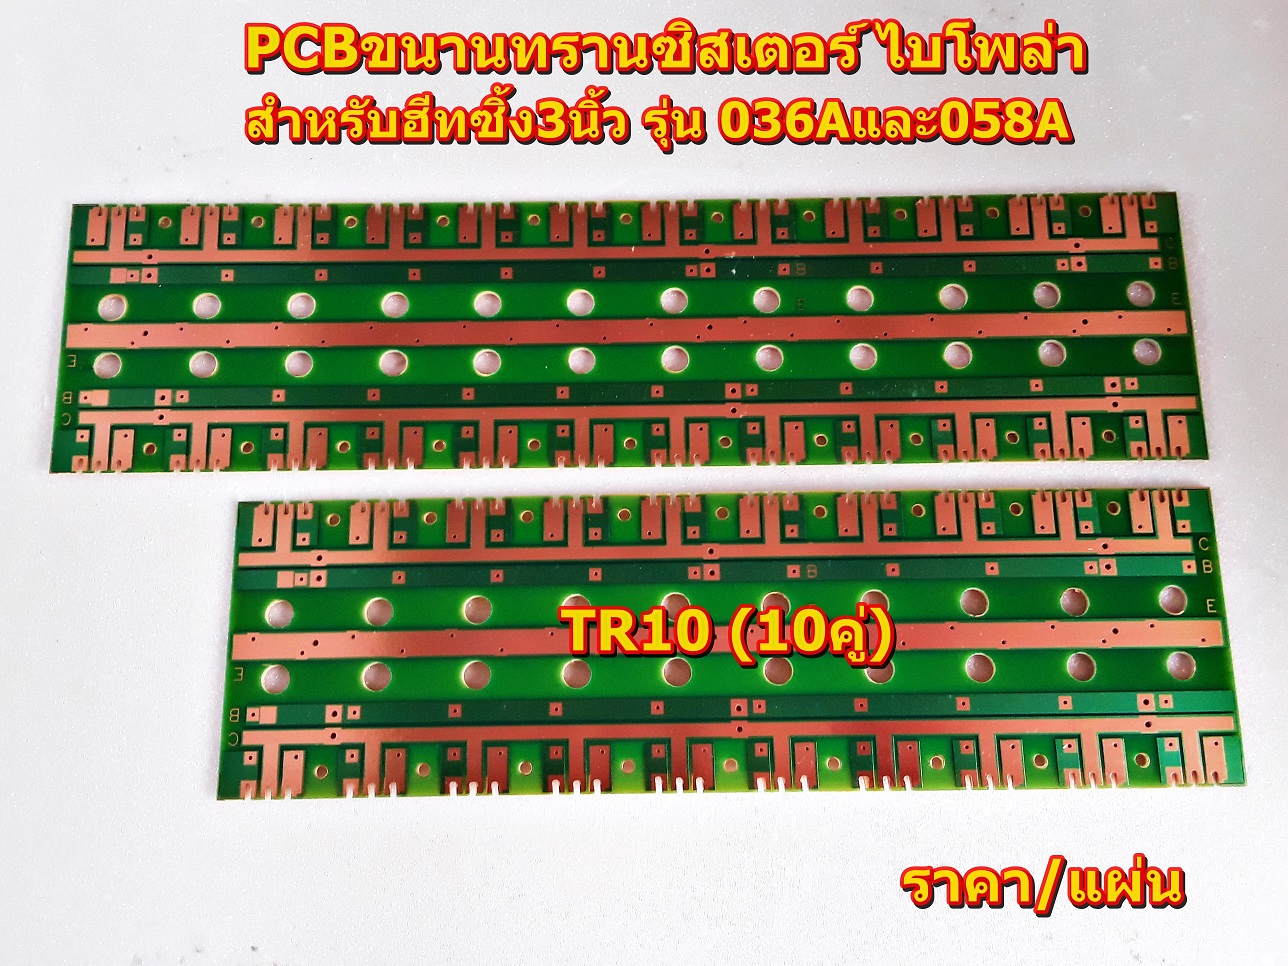 PCBขนานทรานซิสเตอร์ ไบโพล่าTR10คู่(TR_10), TR12คู่ (TR_12)สำหรับฮีทซิ้ง3นิ้ว รุ่น 036และ058 Amplifier Bord โมดูลขยายเสียง